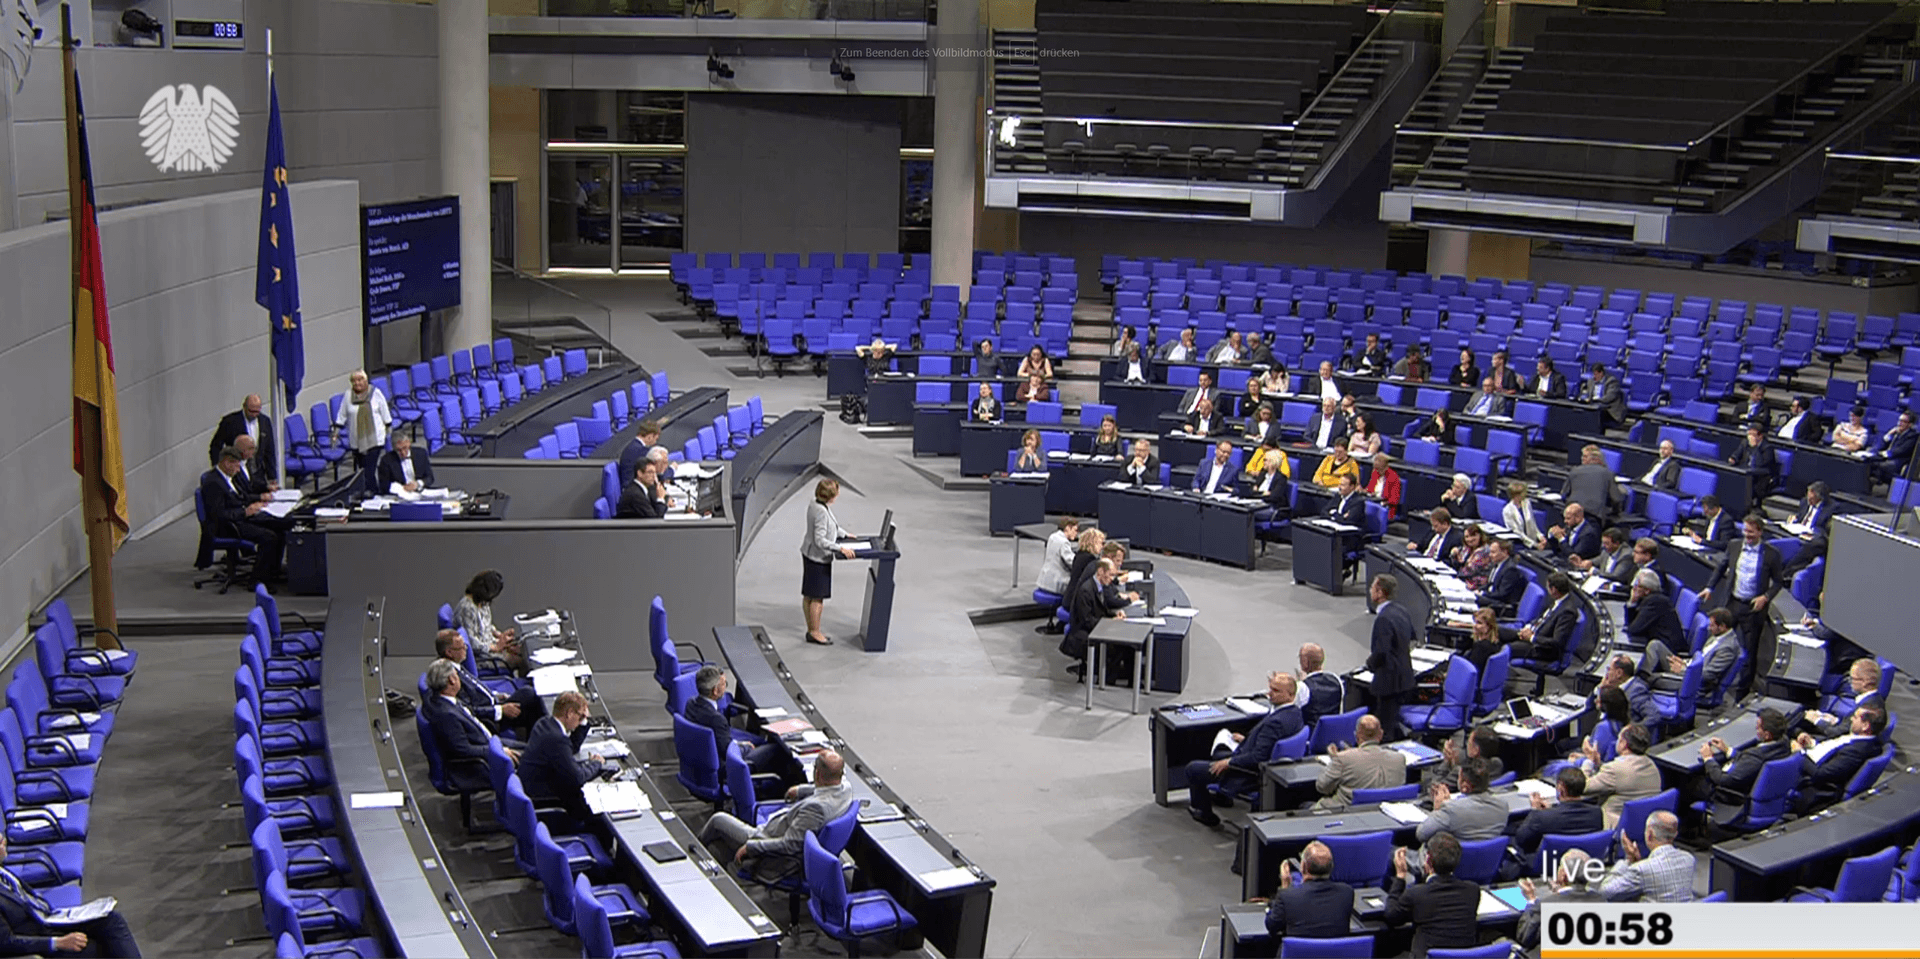 Die Bundestagssitzung um 0.58 Uhr, noch ist die AfD im Sitzungsvorstand vertreten.